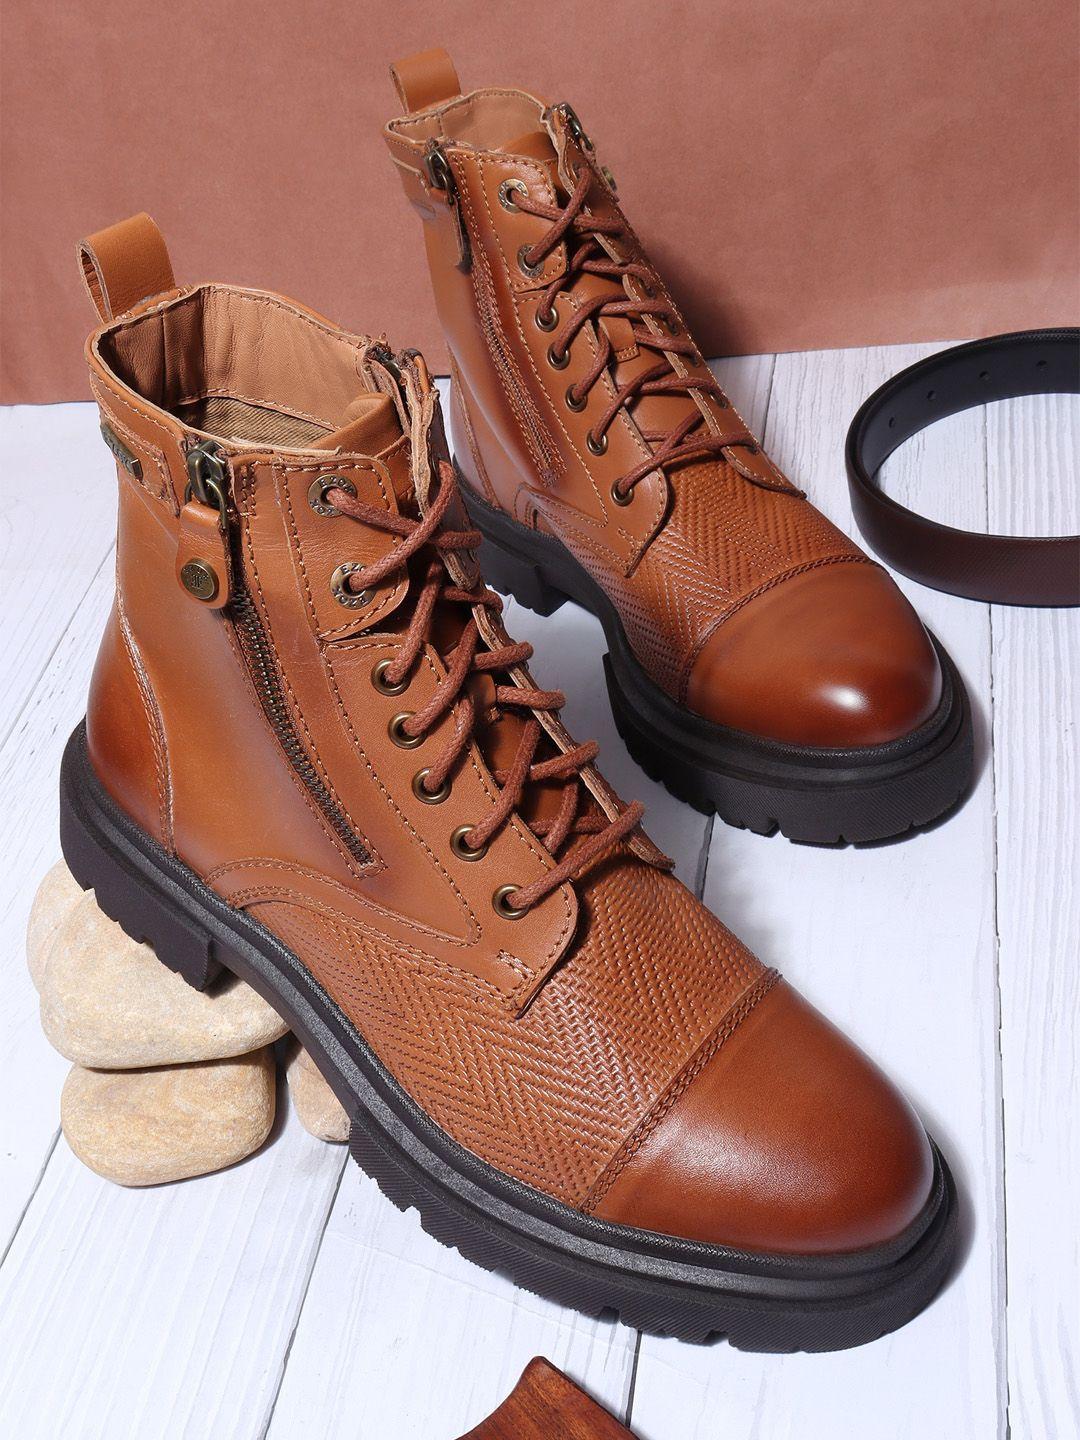 ezok men mid top leather platform heel regular boots